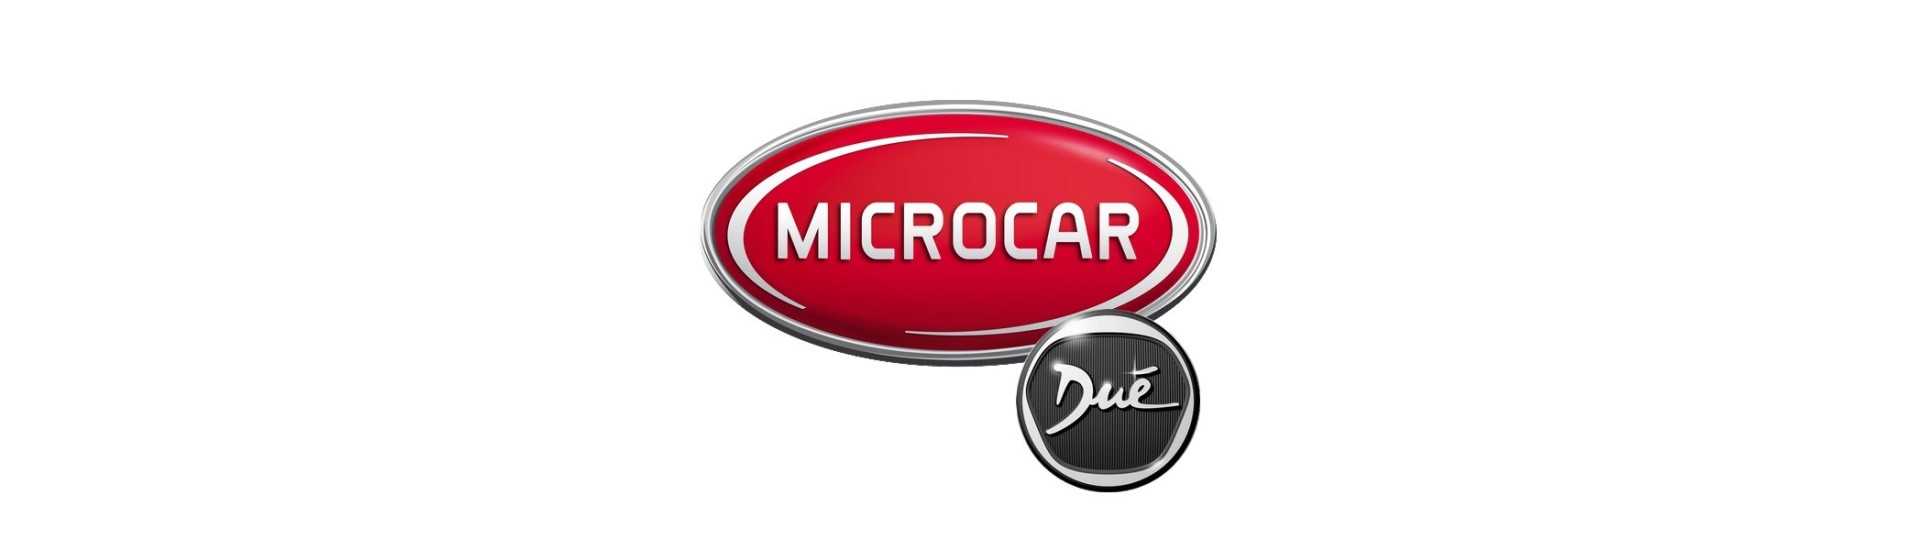 Hide commodo till bästa pris för bil utan körkort Microcar Dué